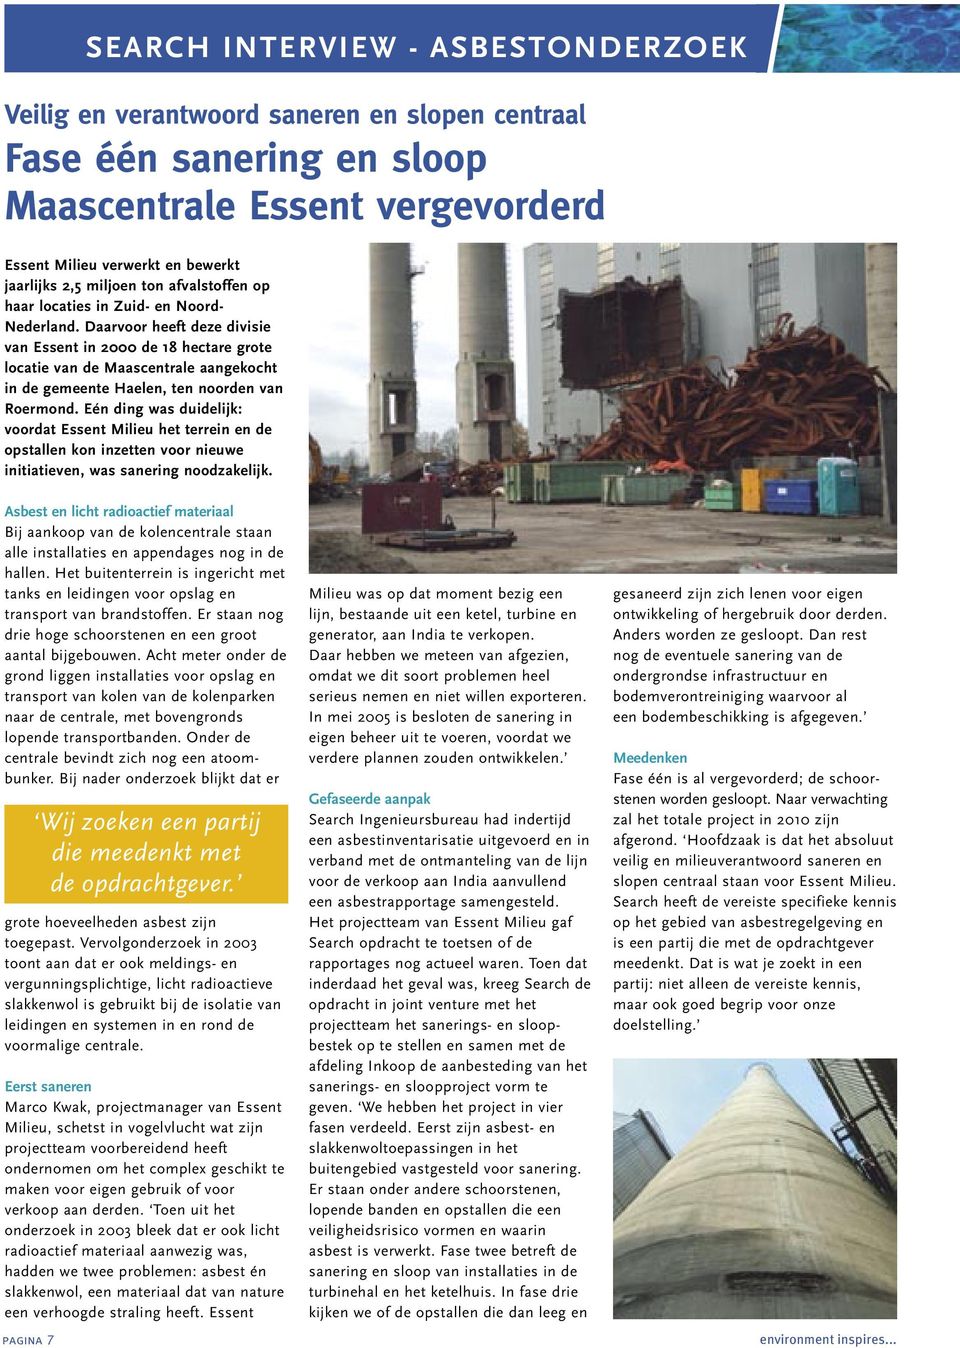 Daarvoor heeft deze divisie van Essent in 2000 de 18 hectare grote locatie van de Maascentrale aangekocht in de gemeente Haelen, ten noorden van Roermond.